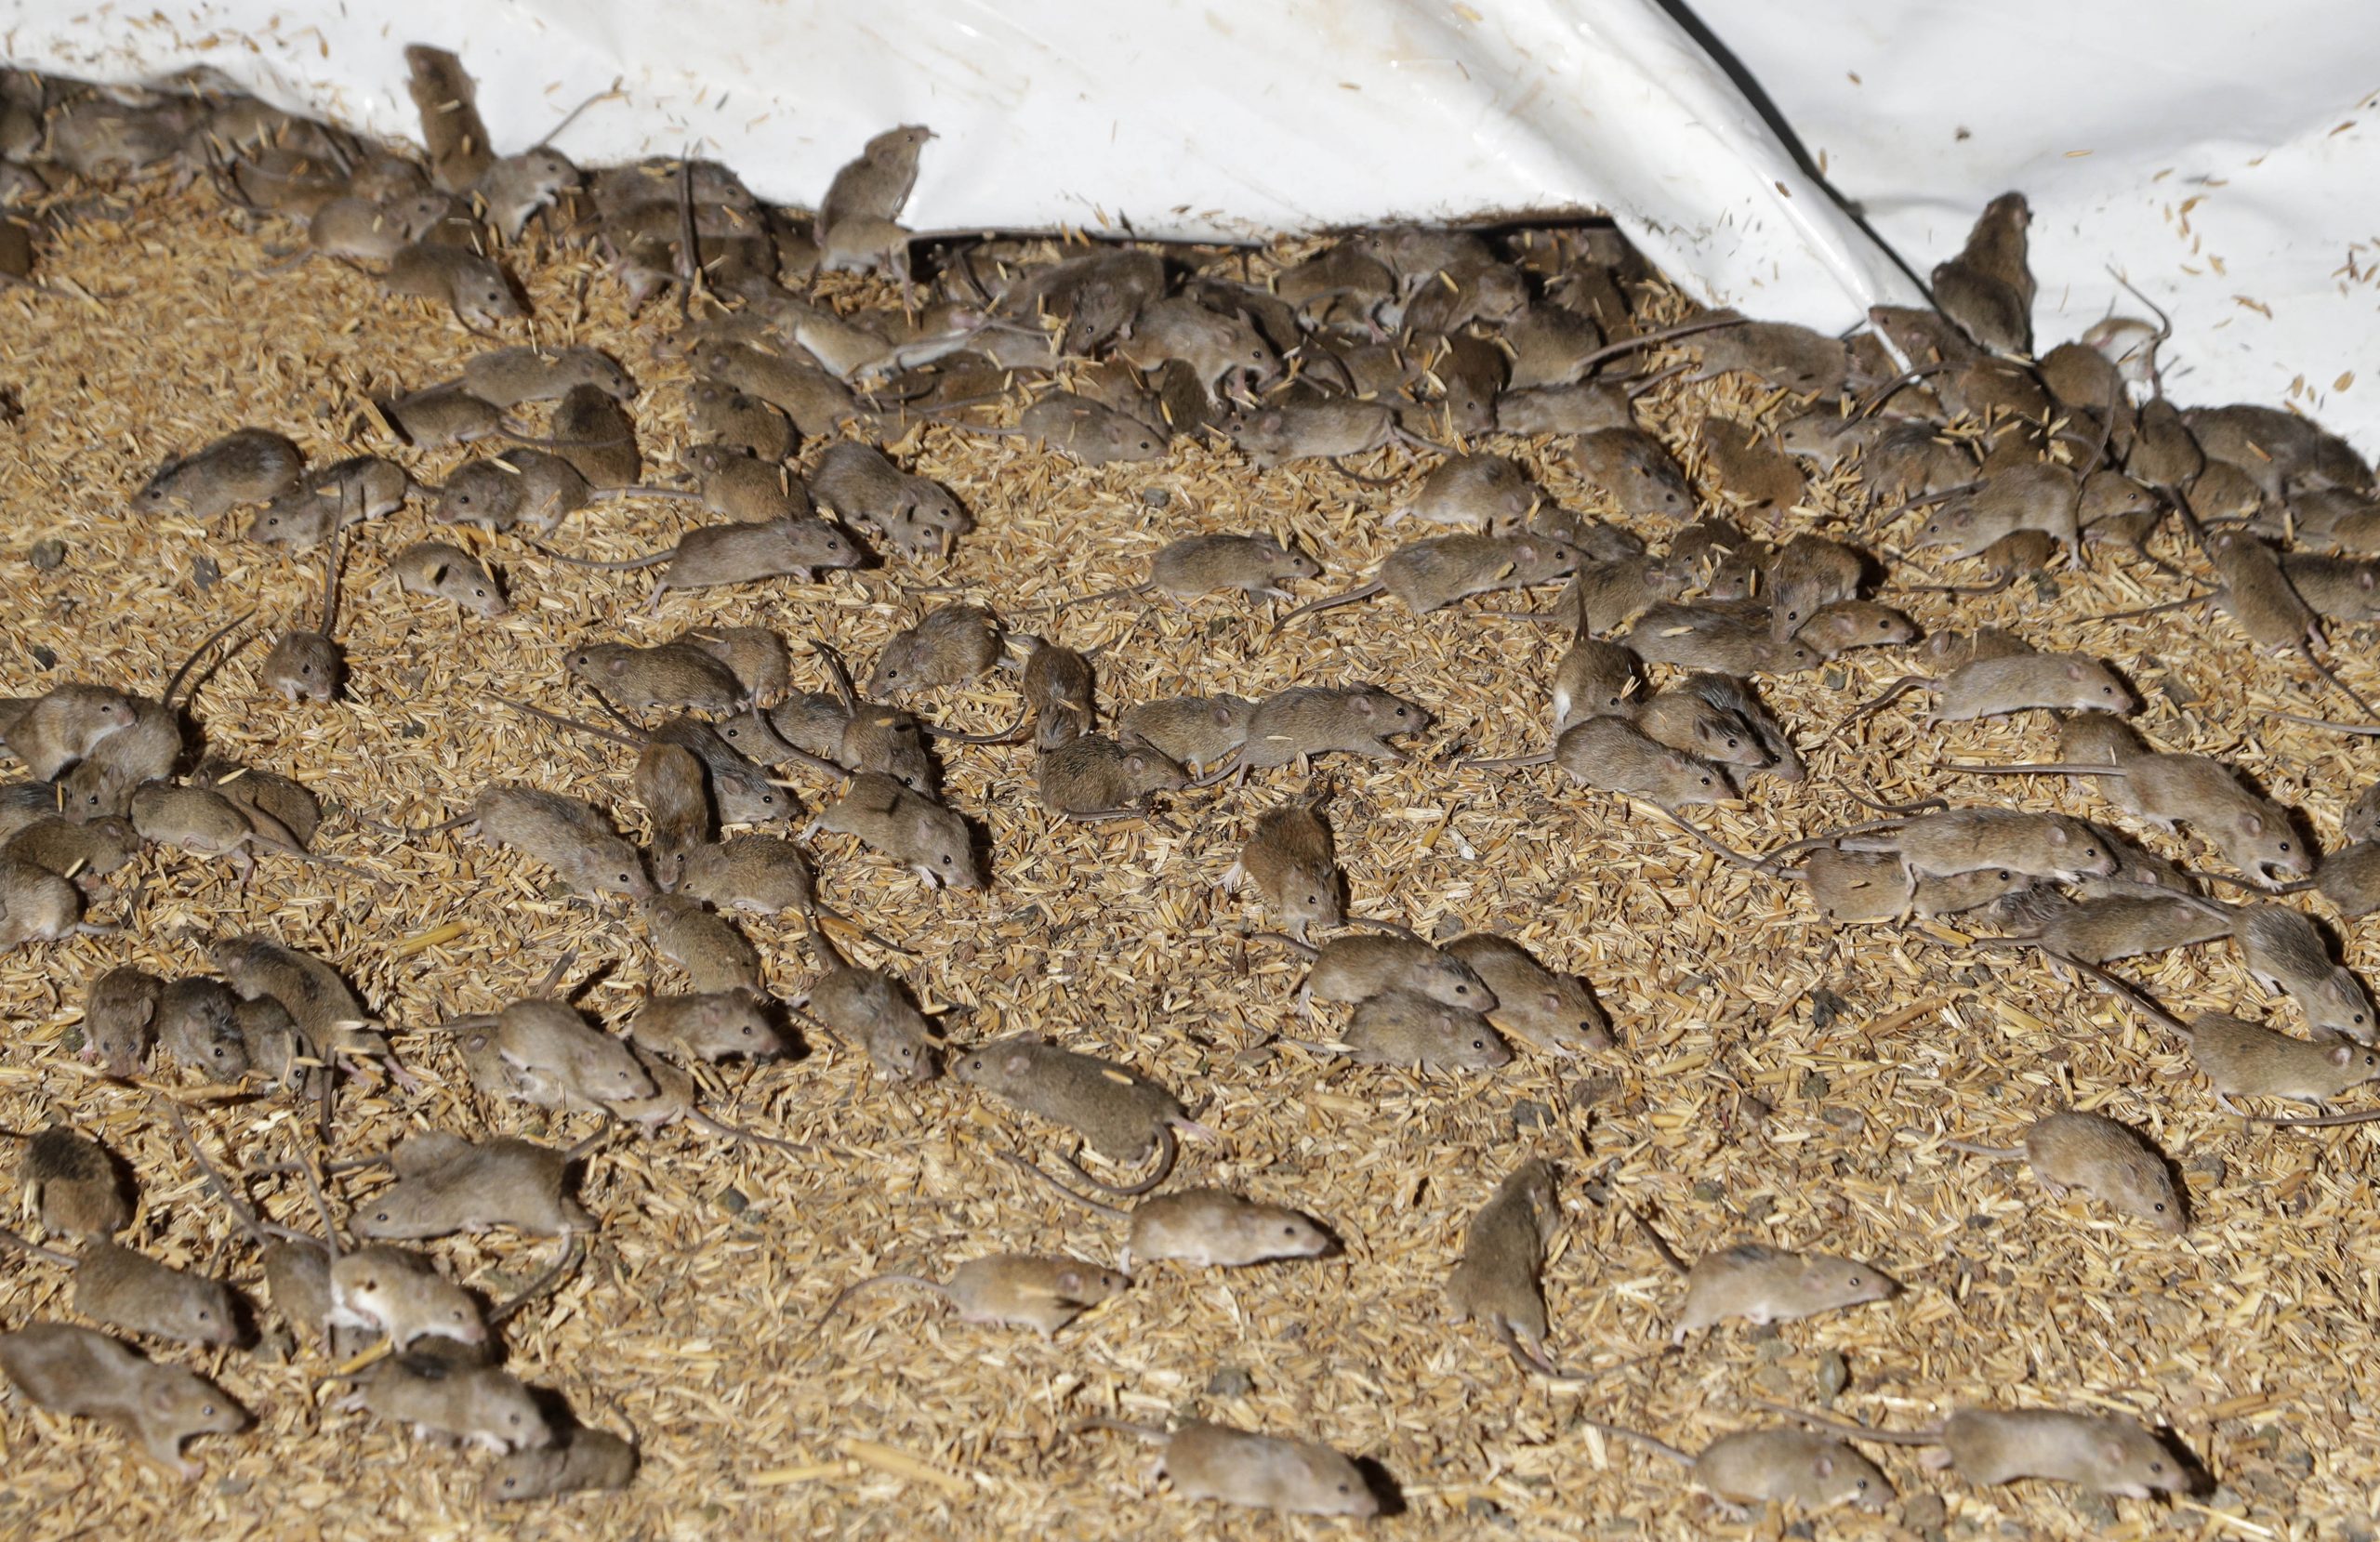 Mouse plague forces Australian prison evacuation